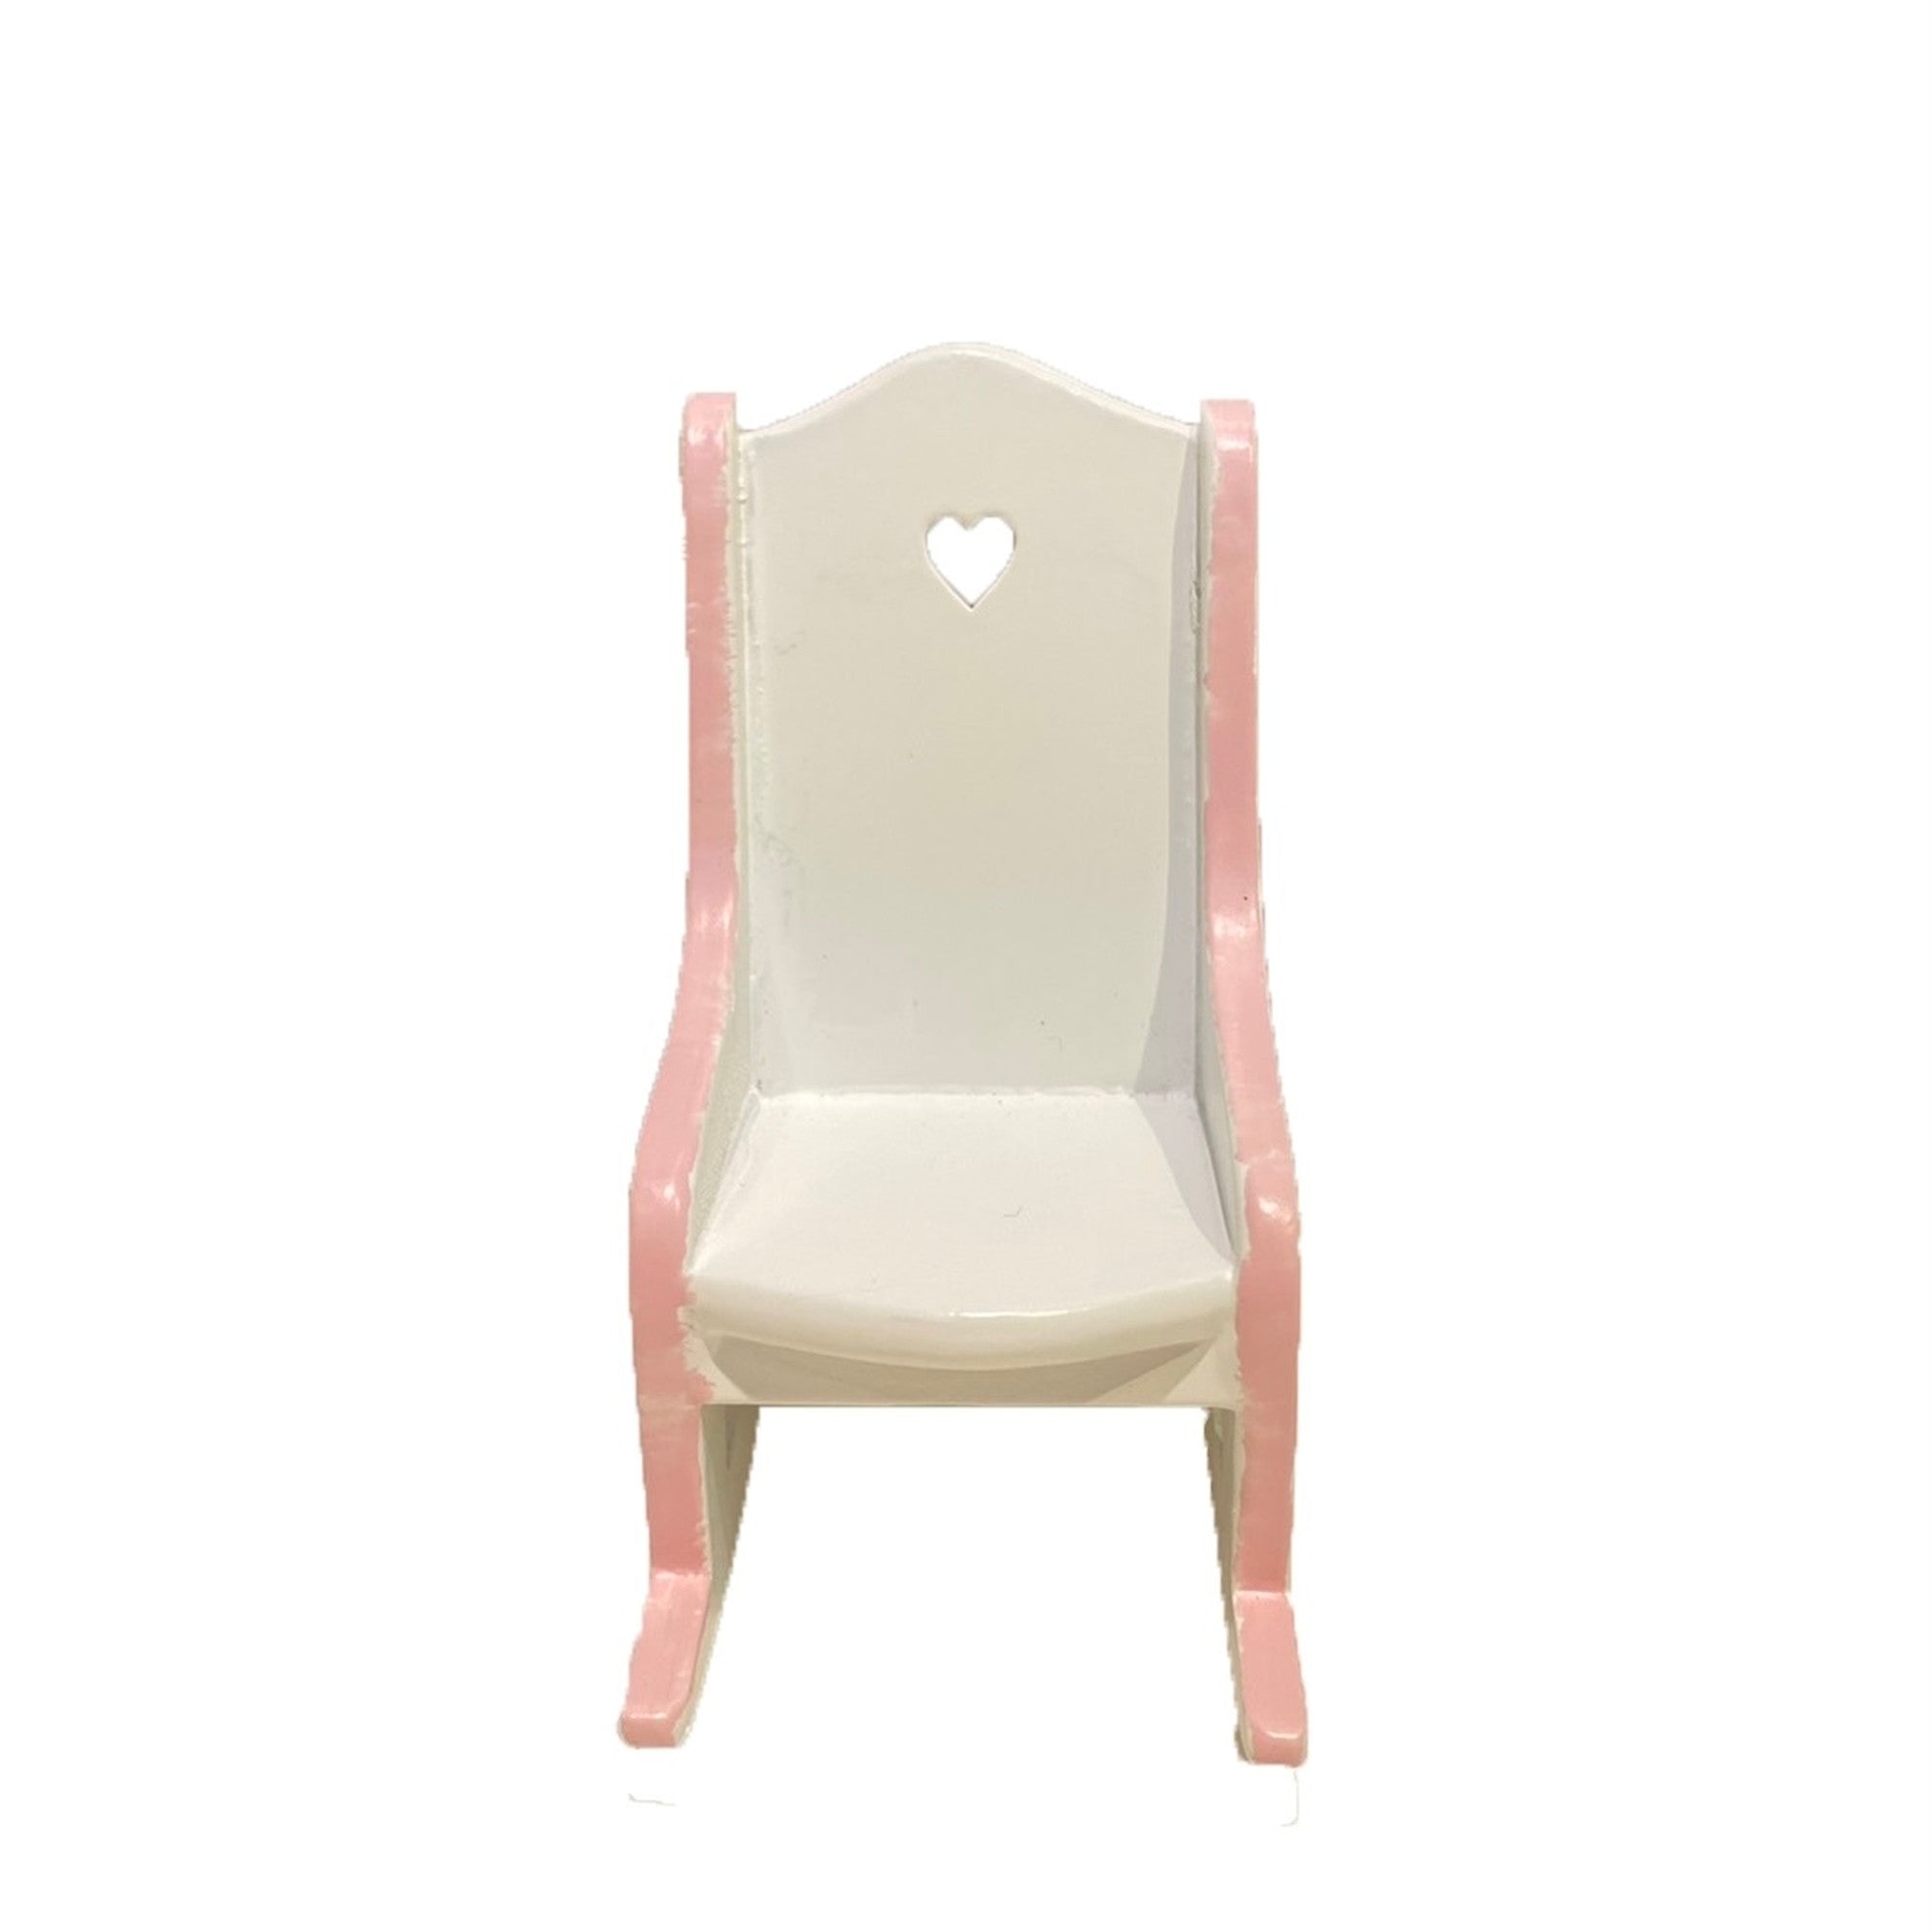 MOFUMOFU锁椅粉红色